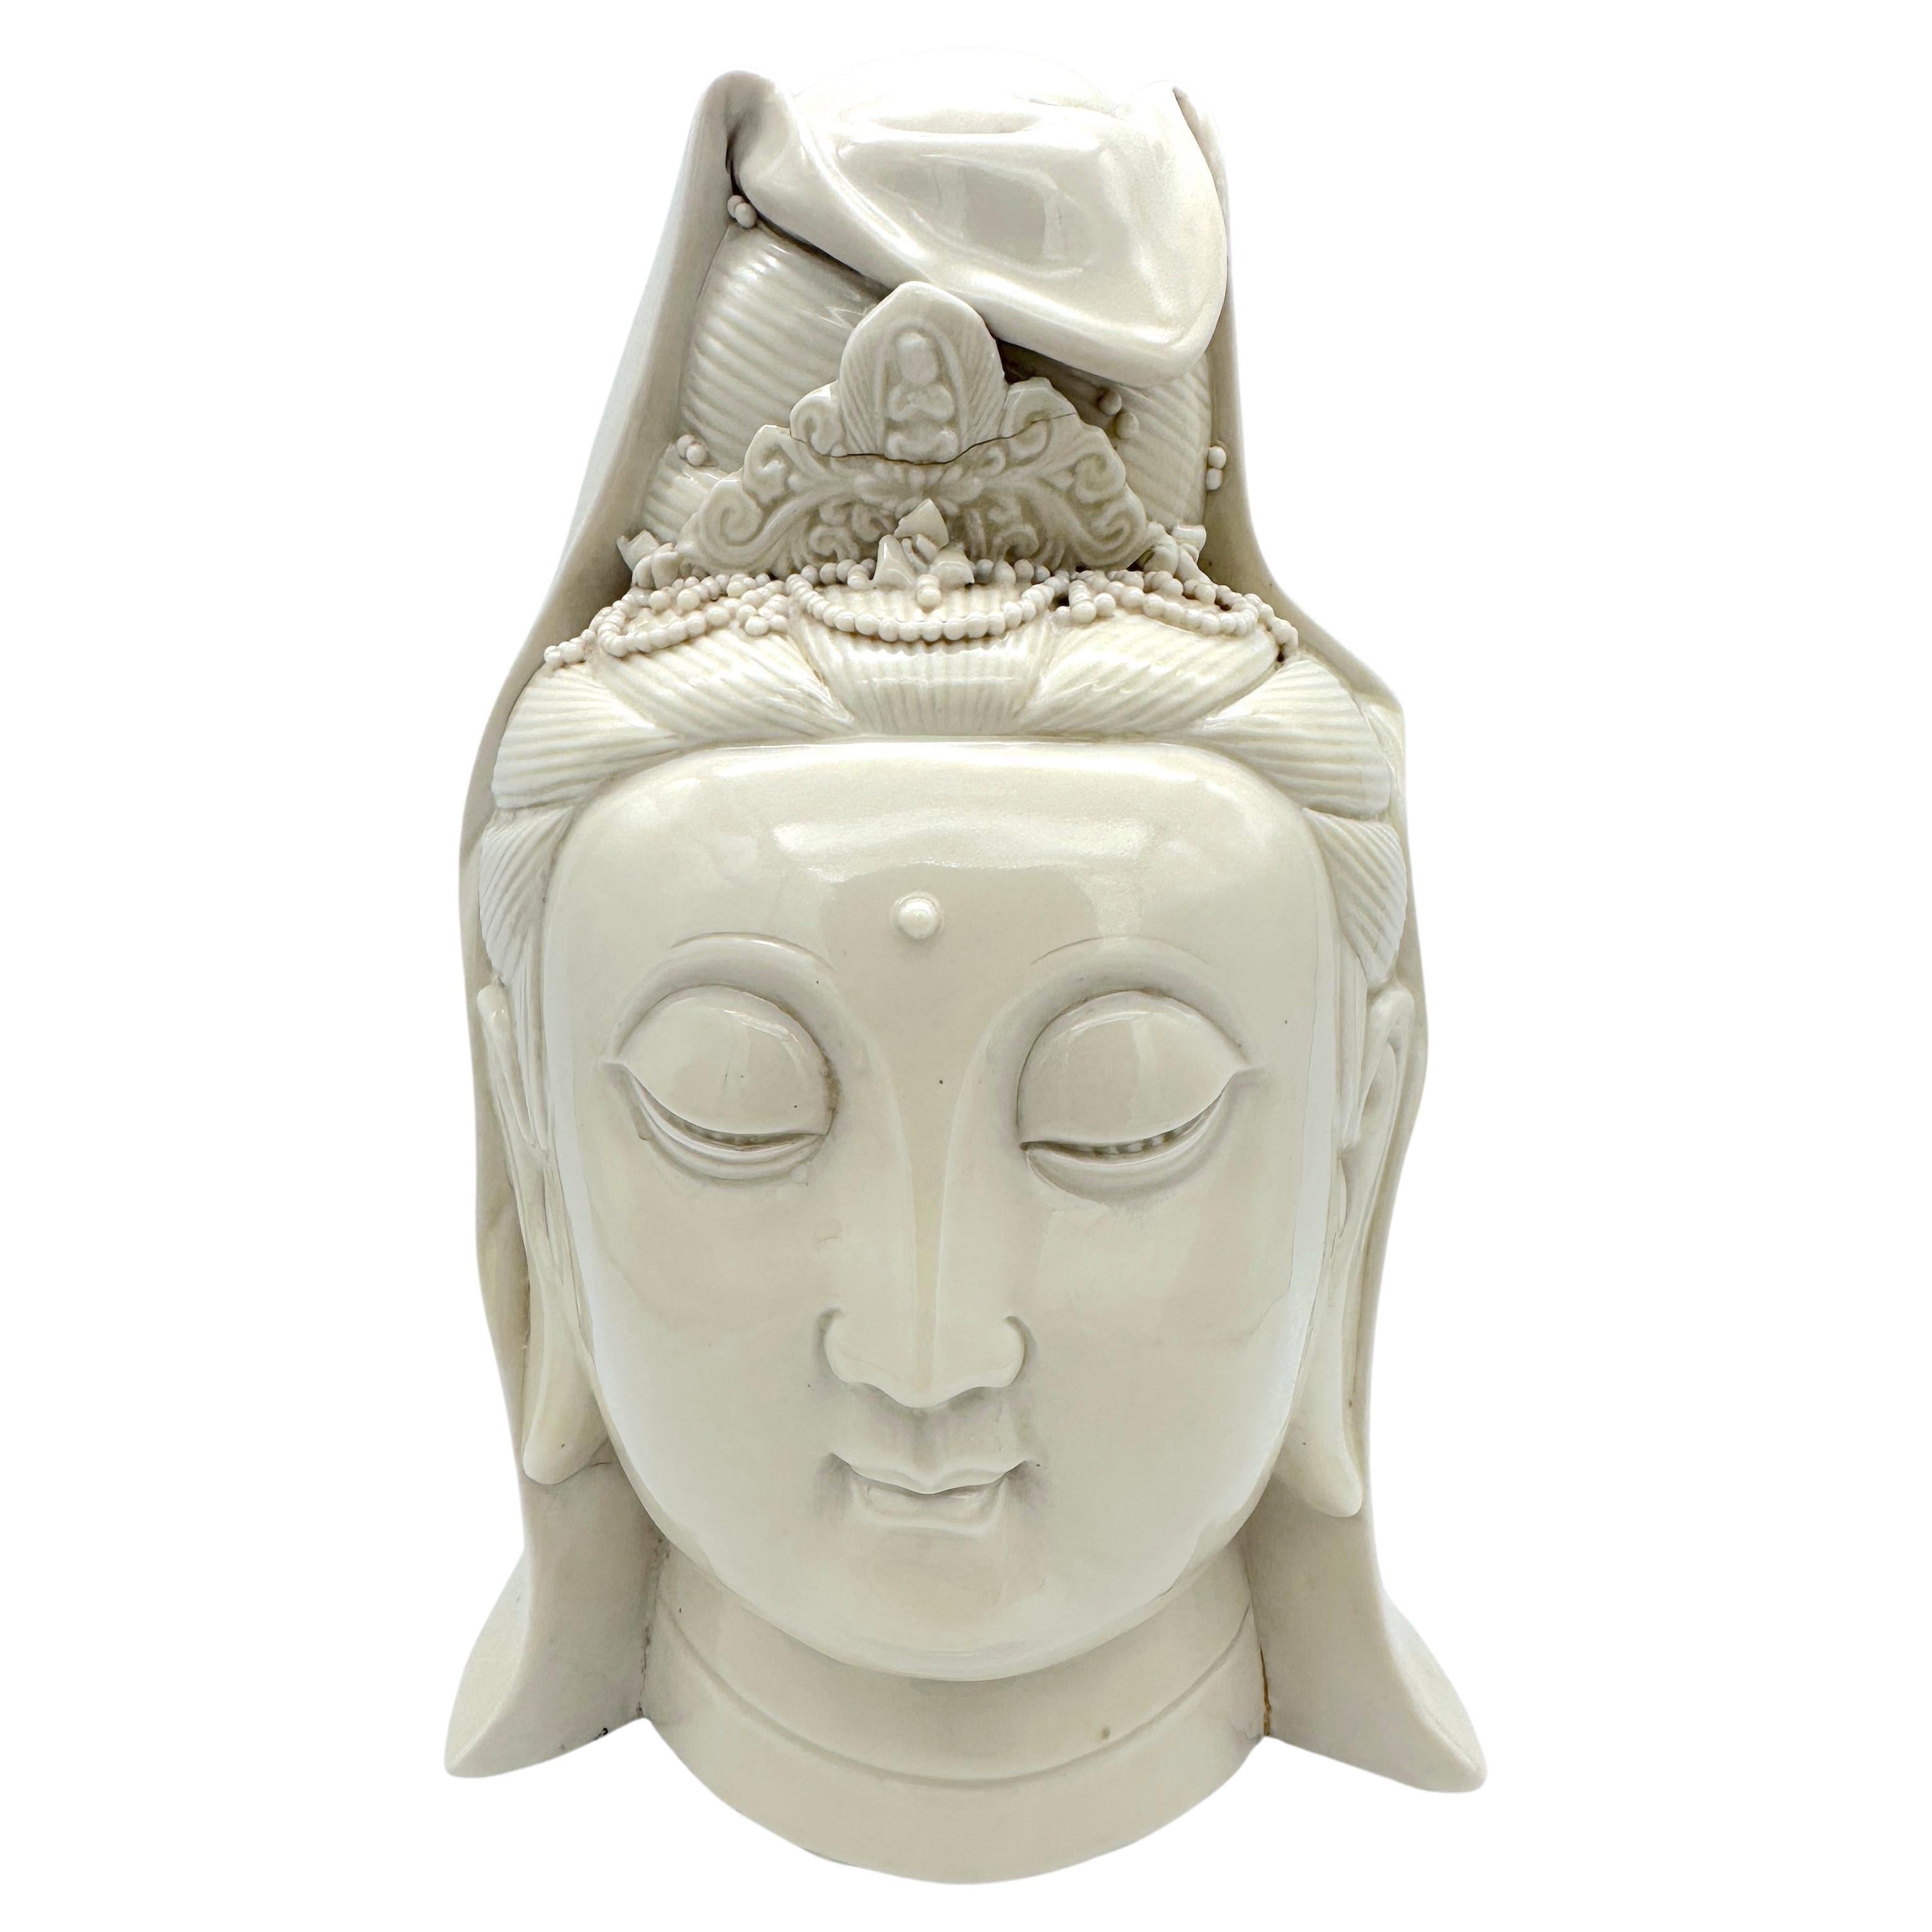 Chinese Blanc De Chine Head of Buddha